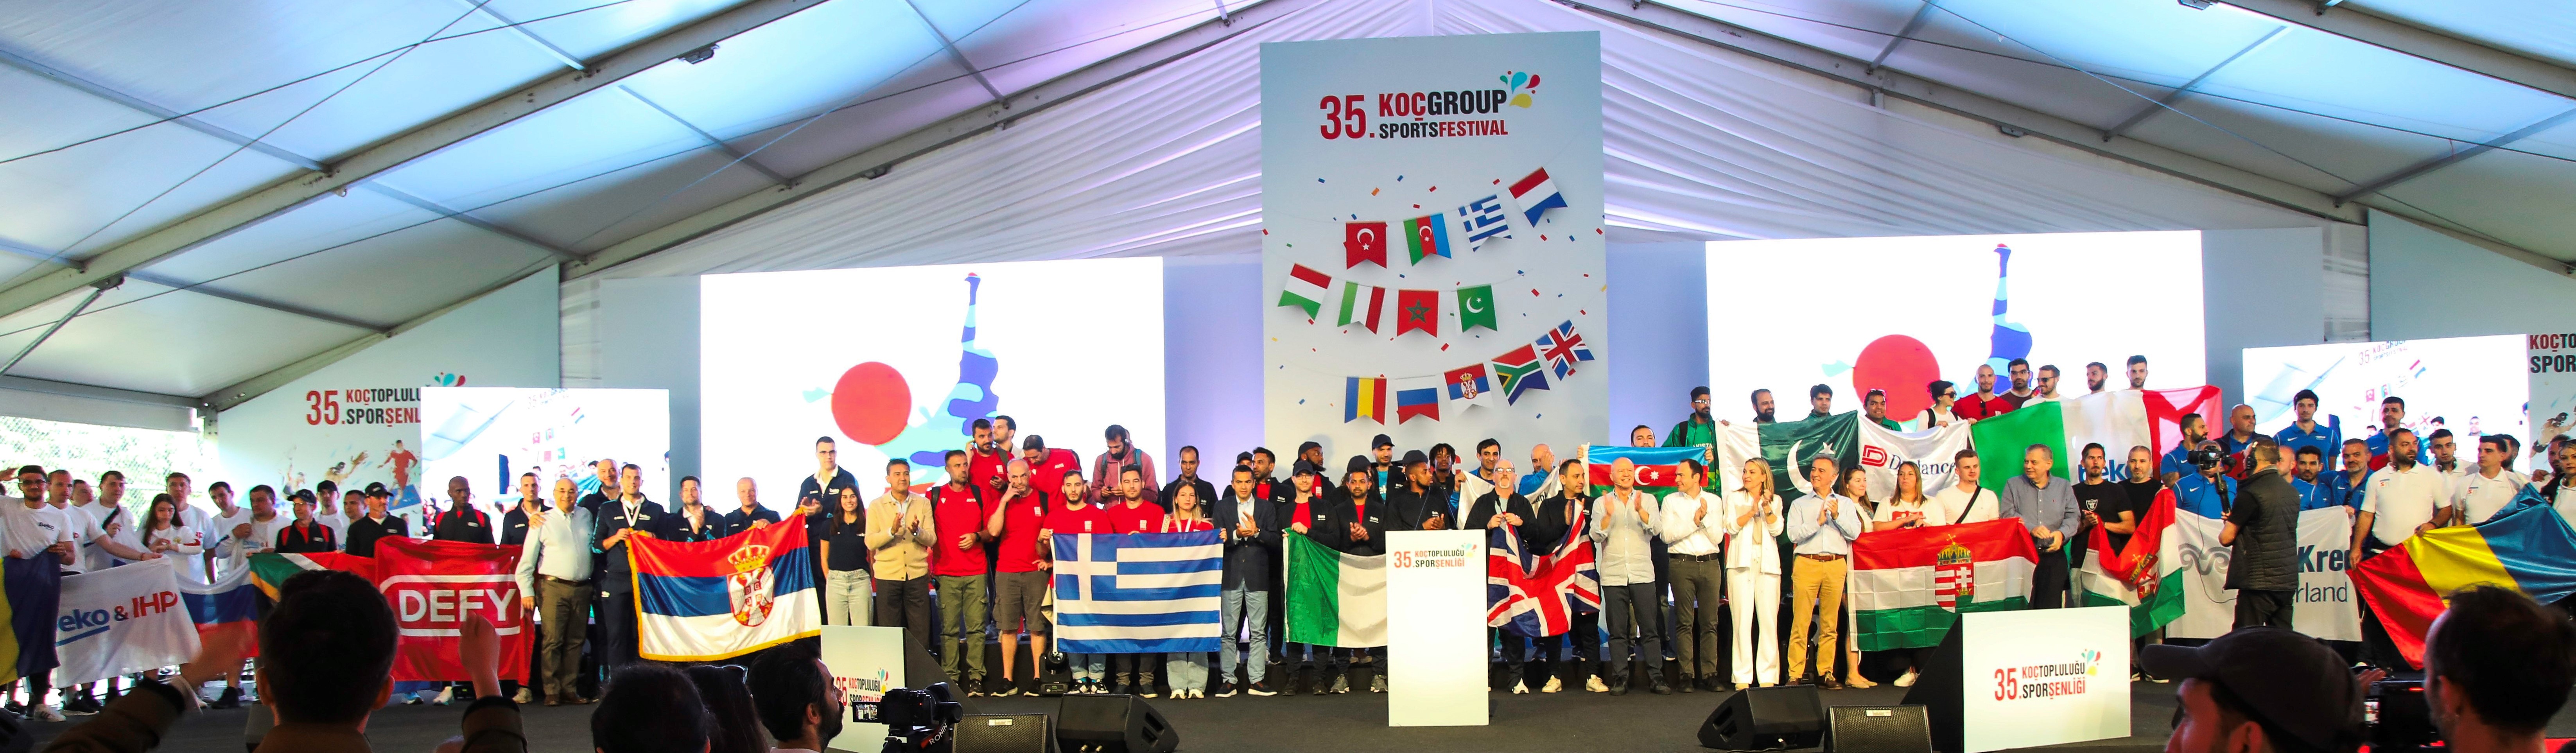 35. Koç Topluluğu Spor Şenliği'nde 3 kıtadan çalışanlar yarıştı